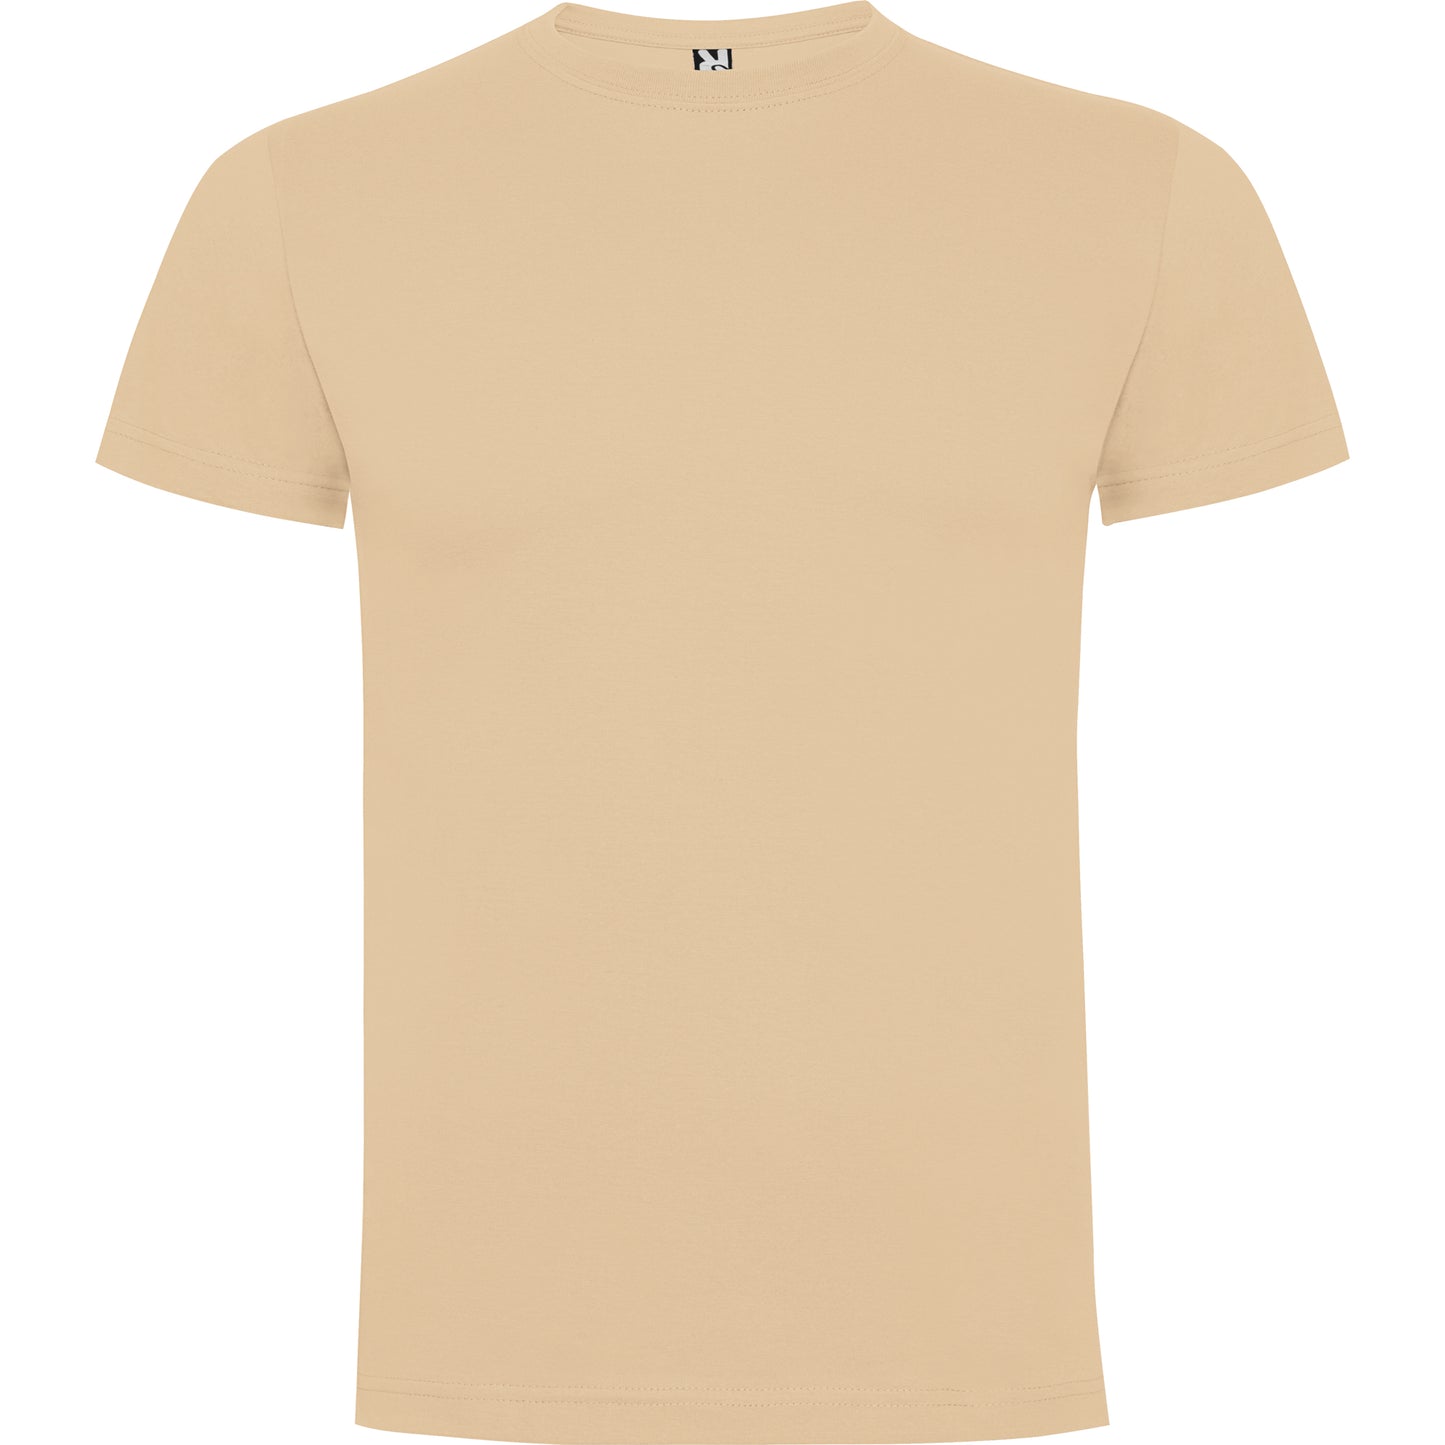 Dogo Premium T-shirt Angora (Natur)